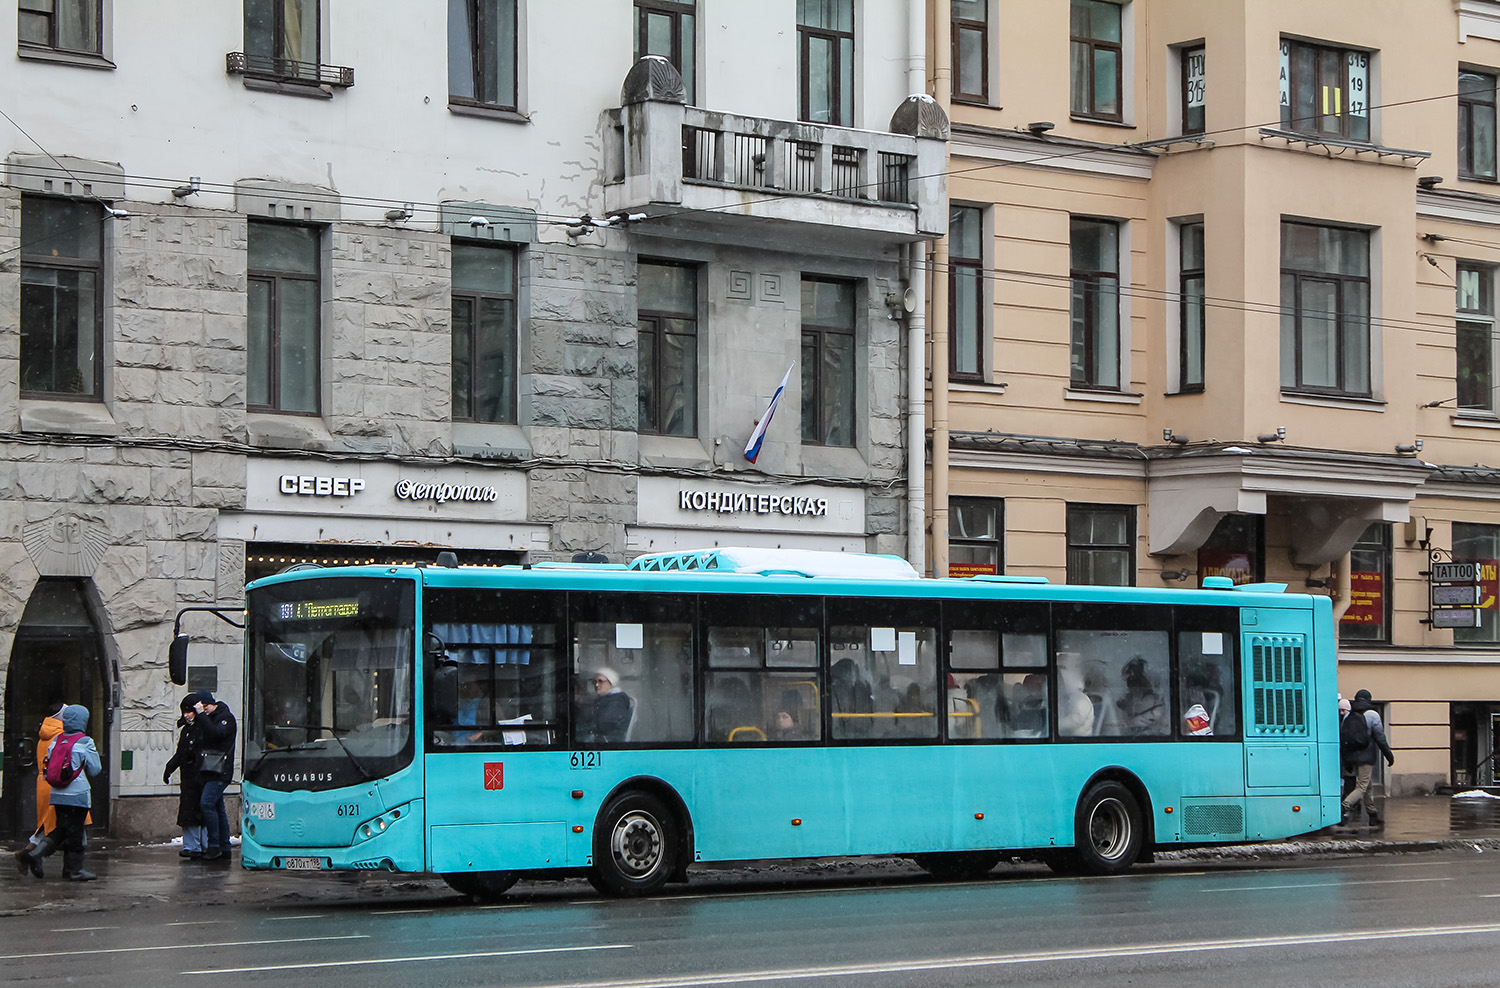 Sankt Peterburgas, Volgabus-5270.G2 (LNG) Nr. 6121